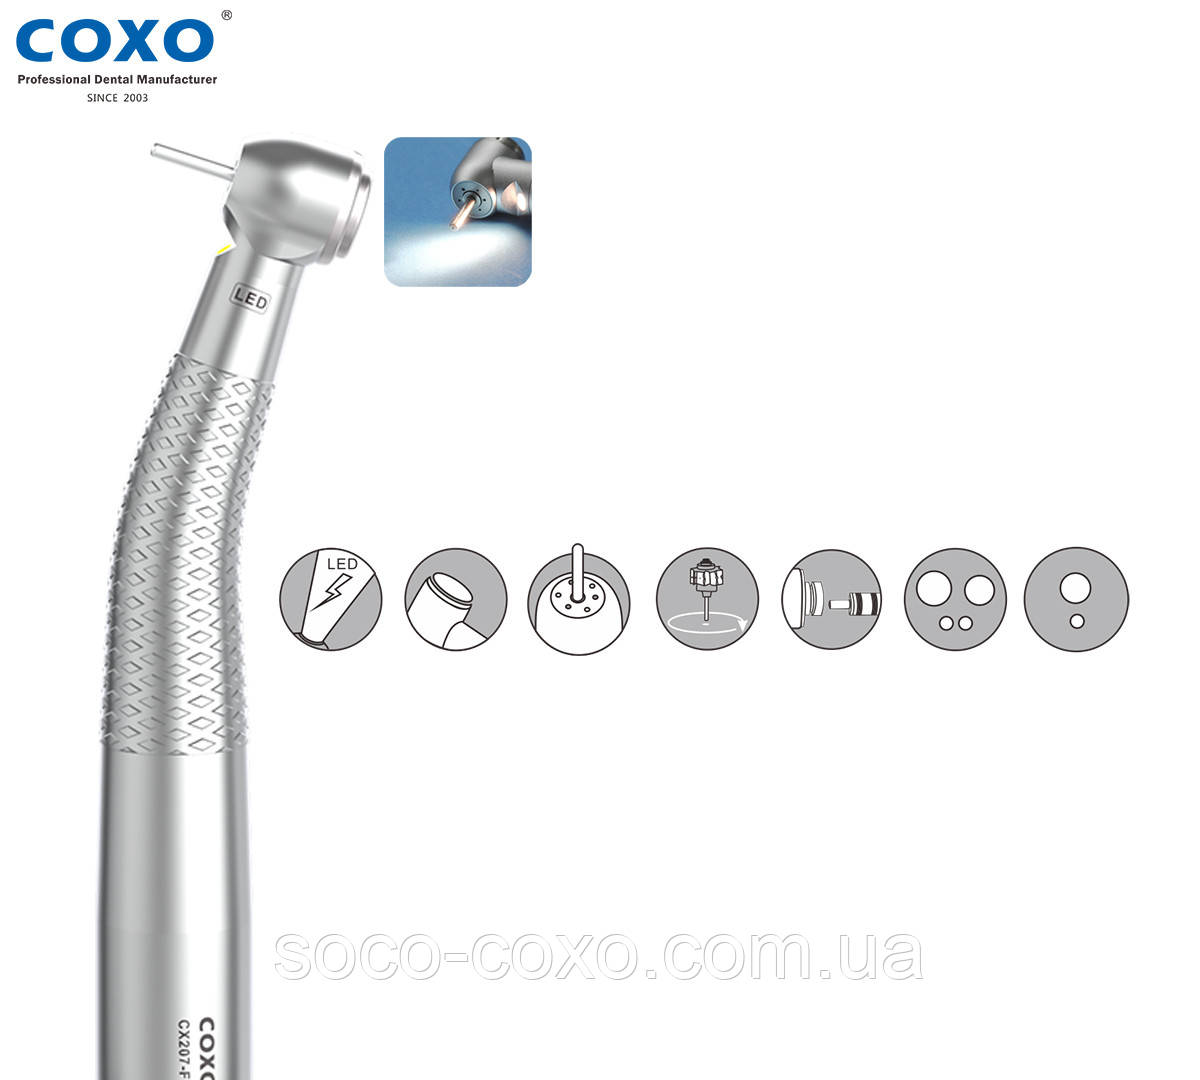 Турбінний наконечник терапевта COXO CX207-F H15-SP4 (світло). Оригінал. Сертифікат. Гарантія!